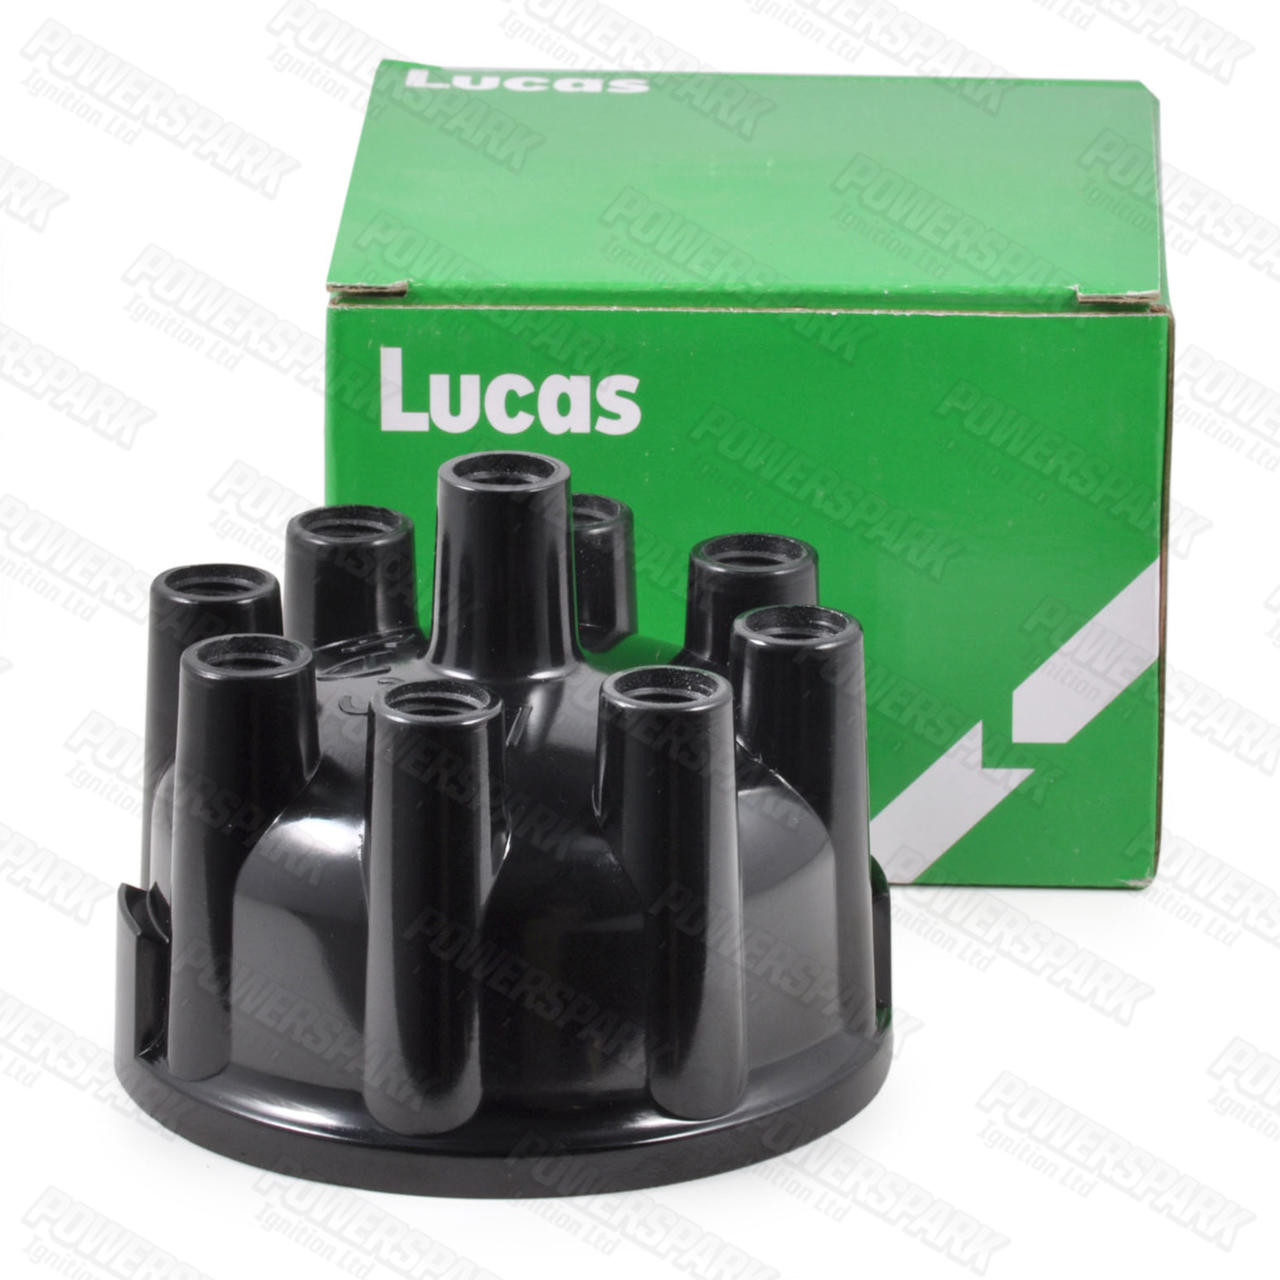 Lucas Lucas 20D8 Distributor Cap Screw Fit DDB118